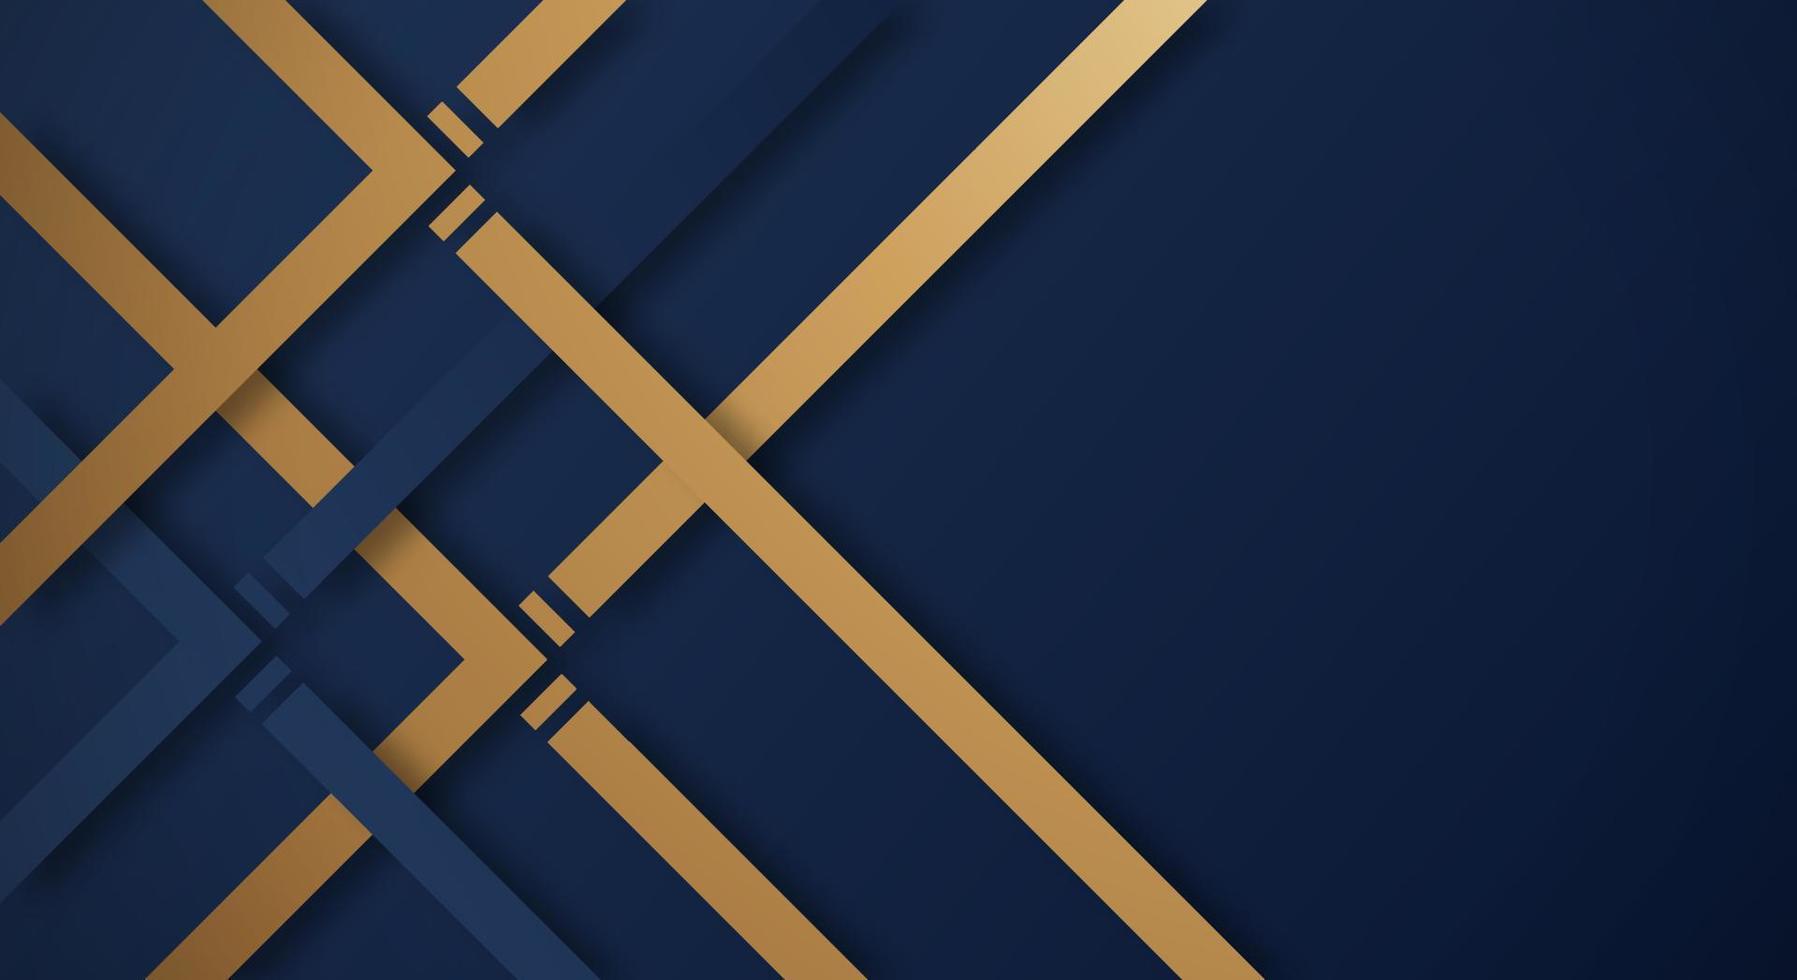 arrière-plan abstrait 3d bleu foncé avec des lignes dorées et bleues style papier découpé texturé. utilisable pour la mise en page Web décorative, l'affiche, la bannière, la brochure d'entreprise et la conception de modèles de séminaire vecteur